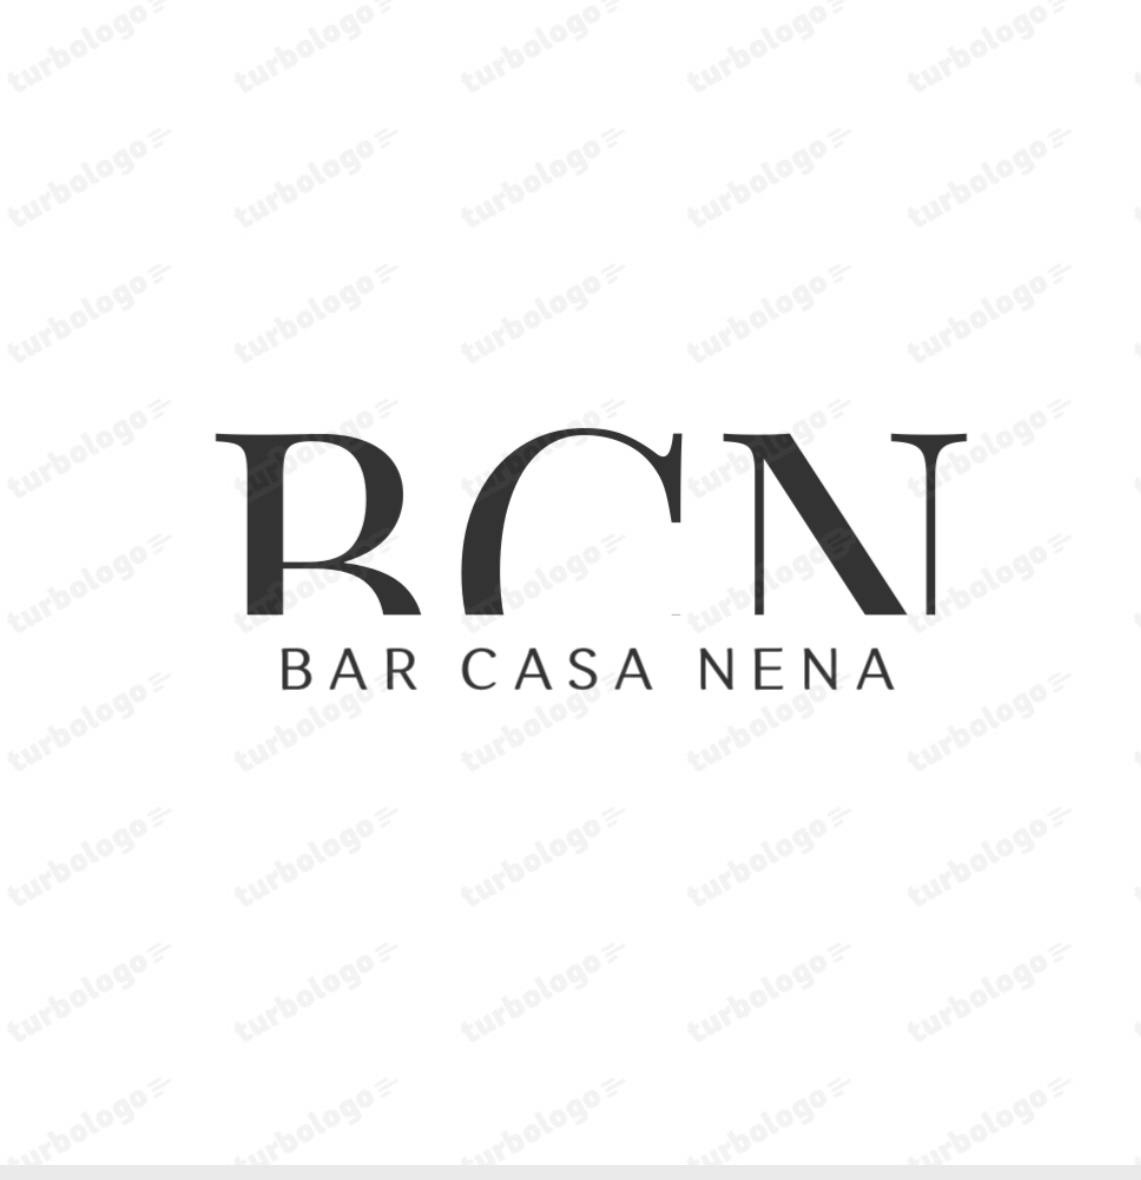 Logo BAR CASA NENA